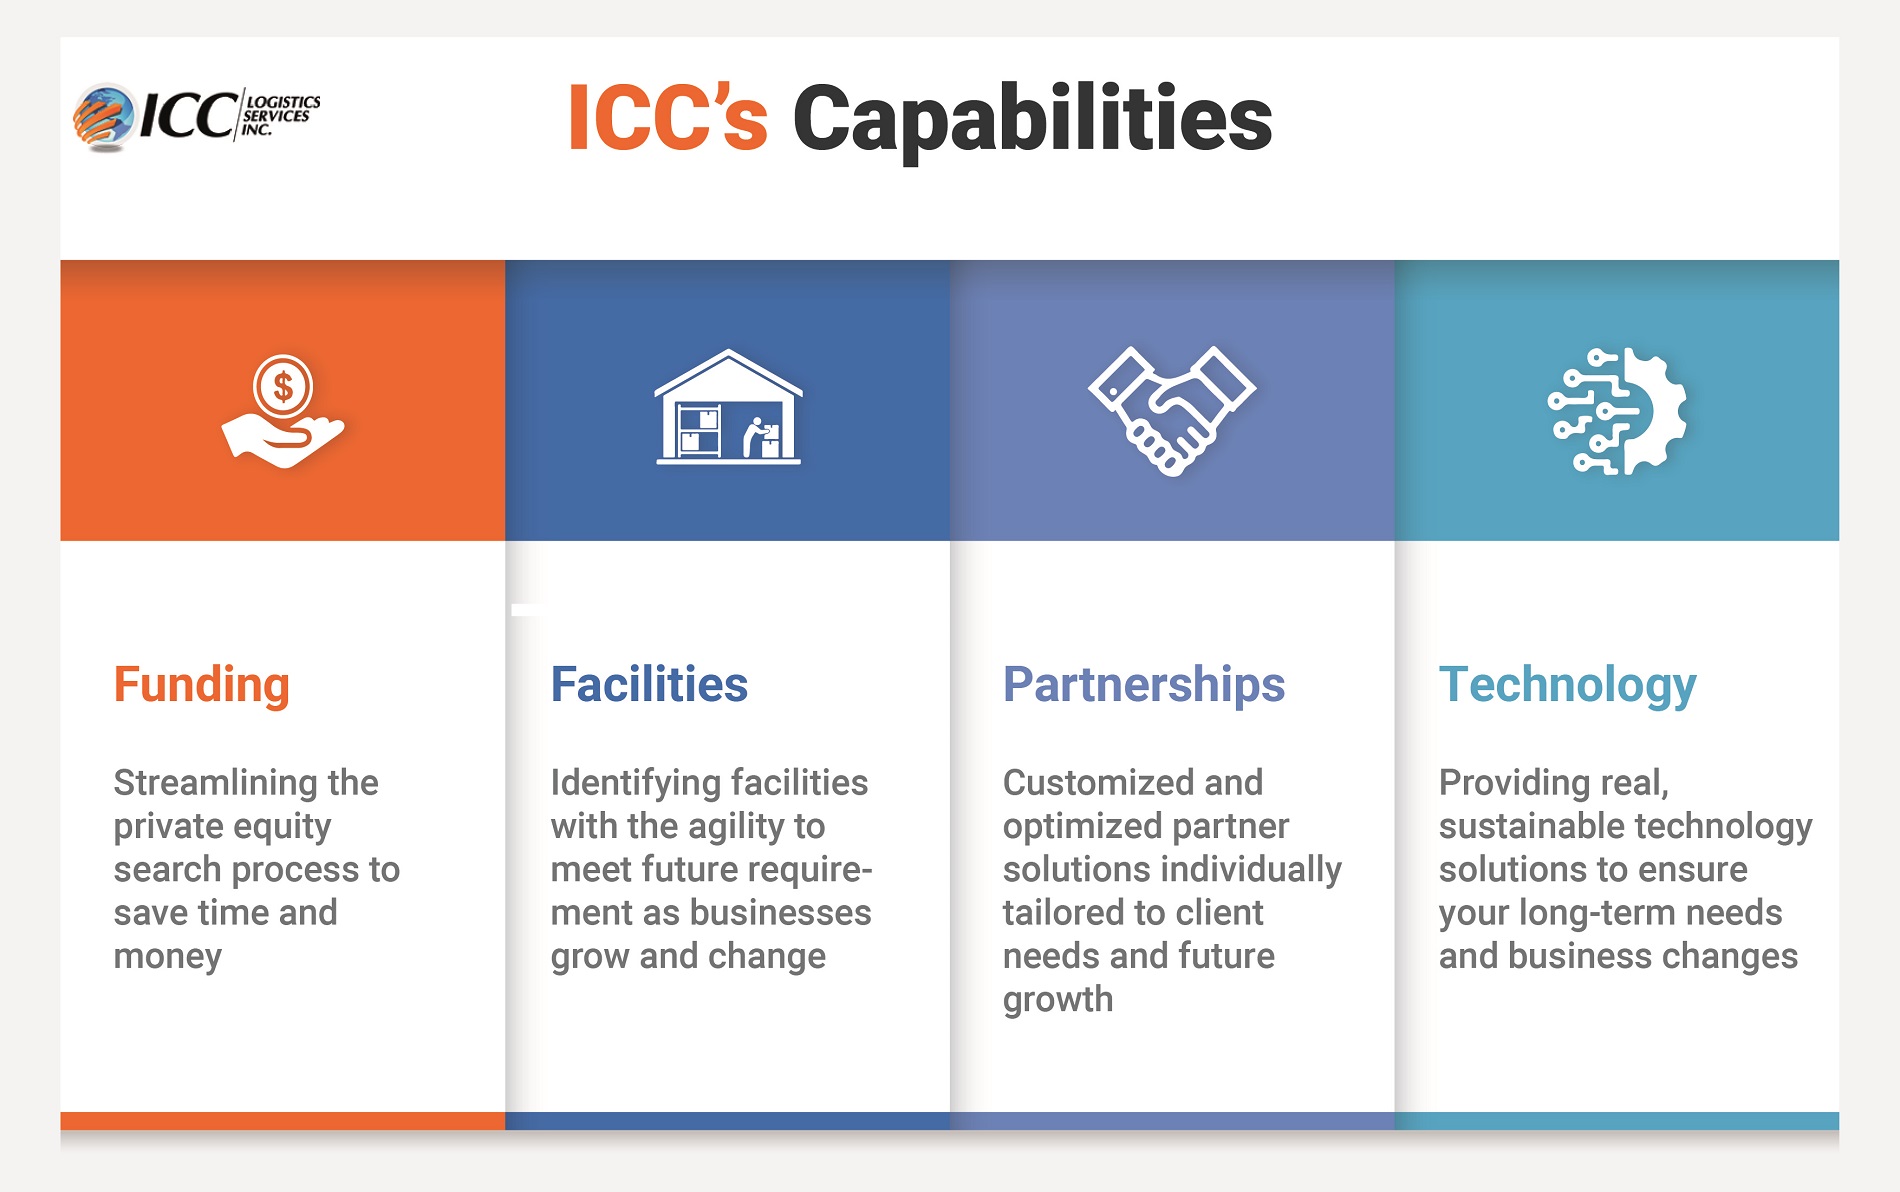 ICC Logistics Services' Capabilities Infographic